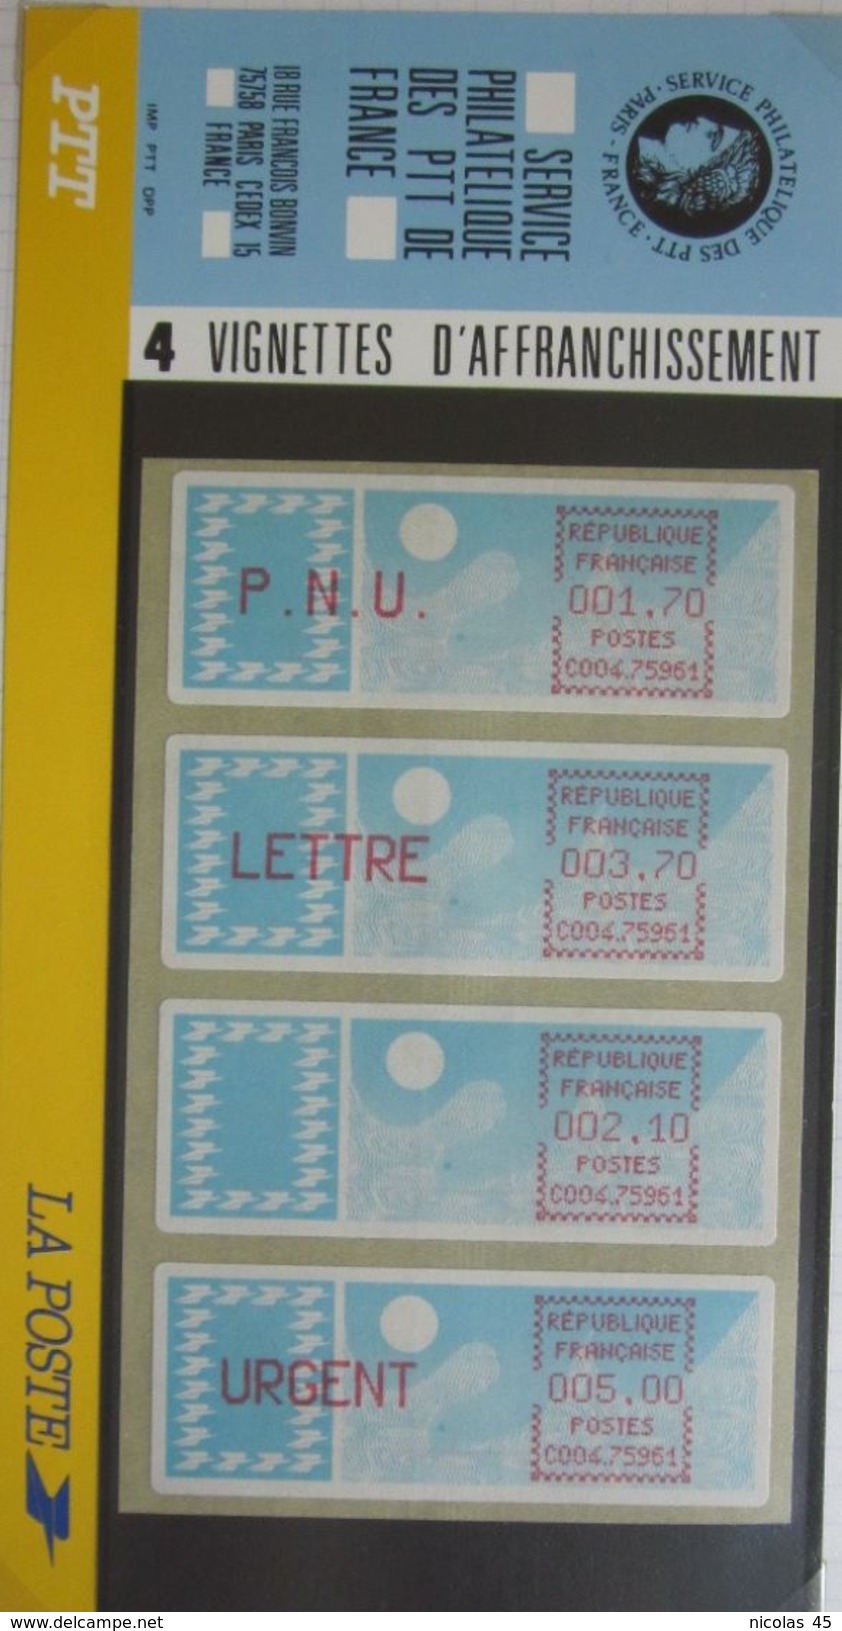 Plaquette Vignettes D'affranchissement - 1985 - Neuf ** - 1985 « Carrier » Paper